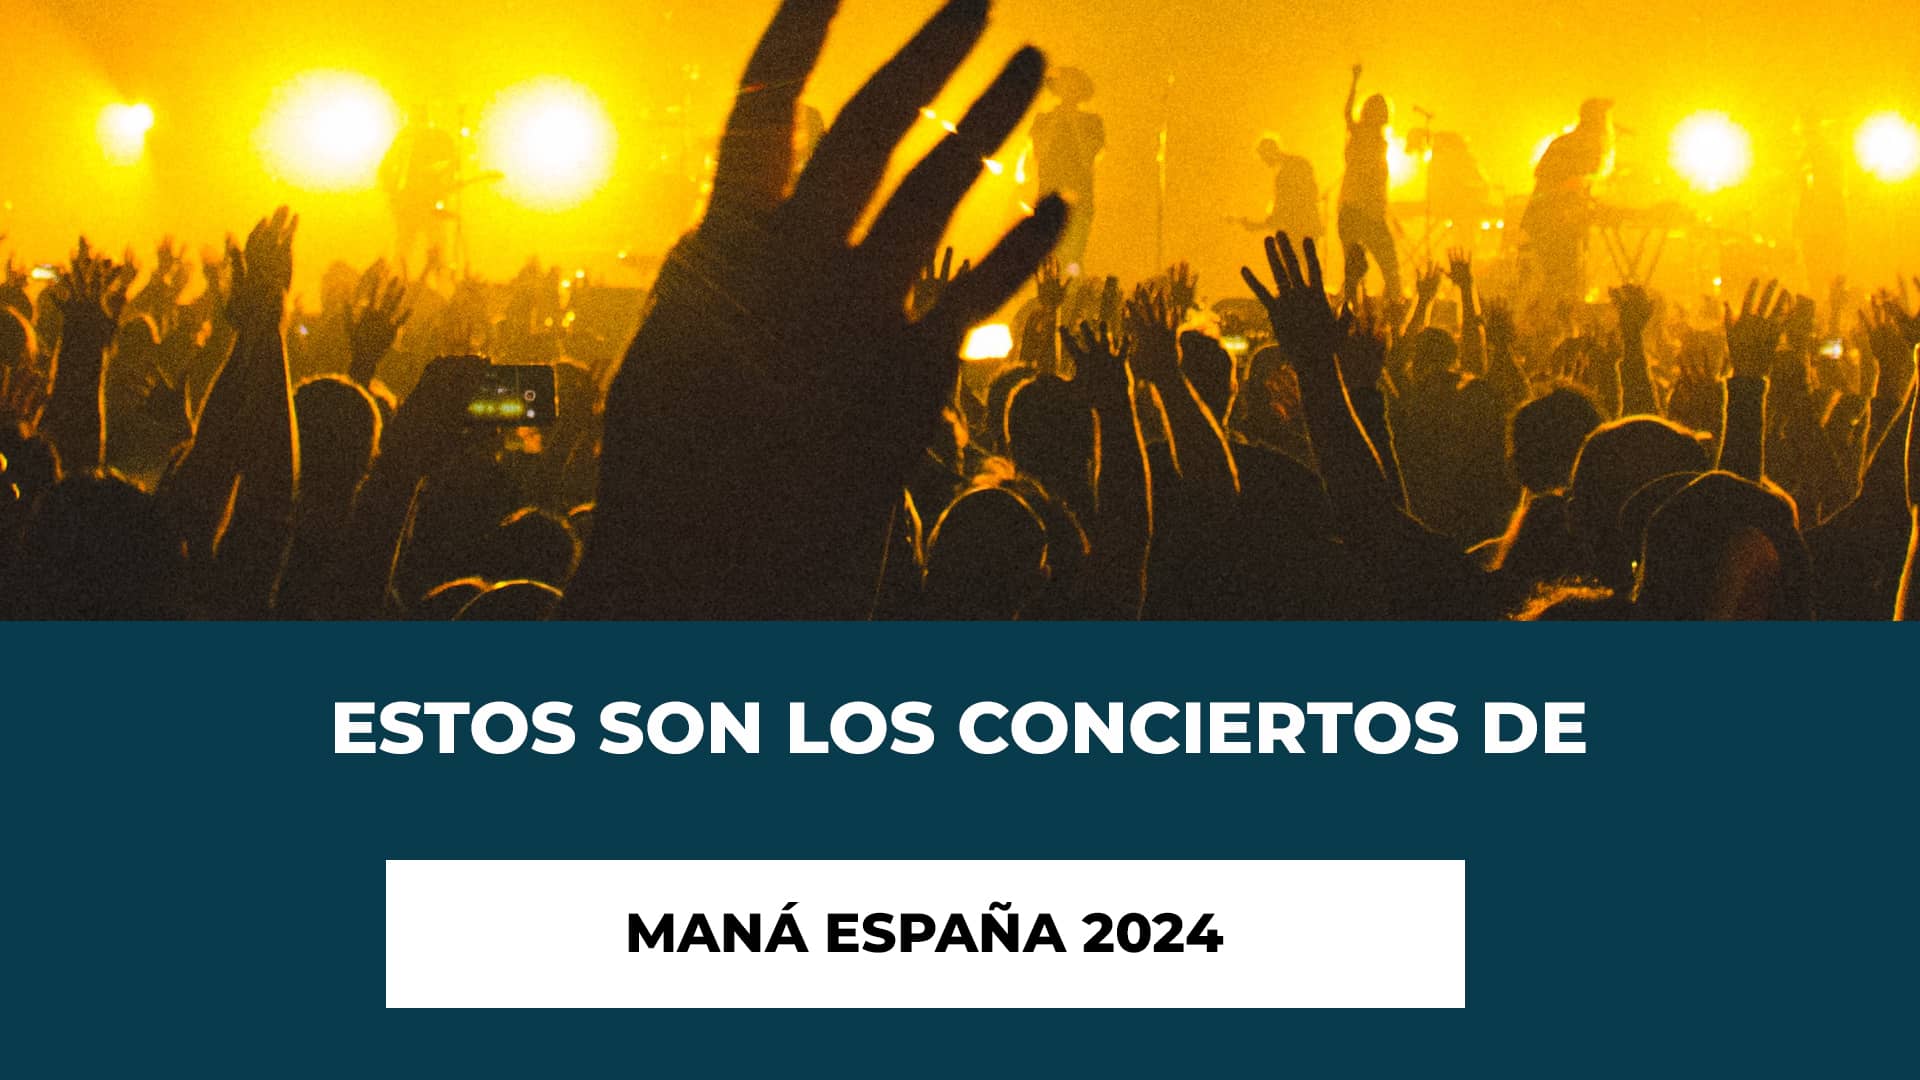 Estos son los conciertos de Maná España 2024 - Fechas, Ciudades y Recintos - Tour España 2024 - Entradas Disponibles